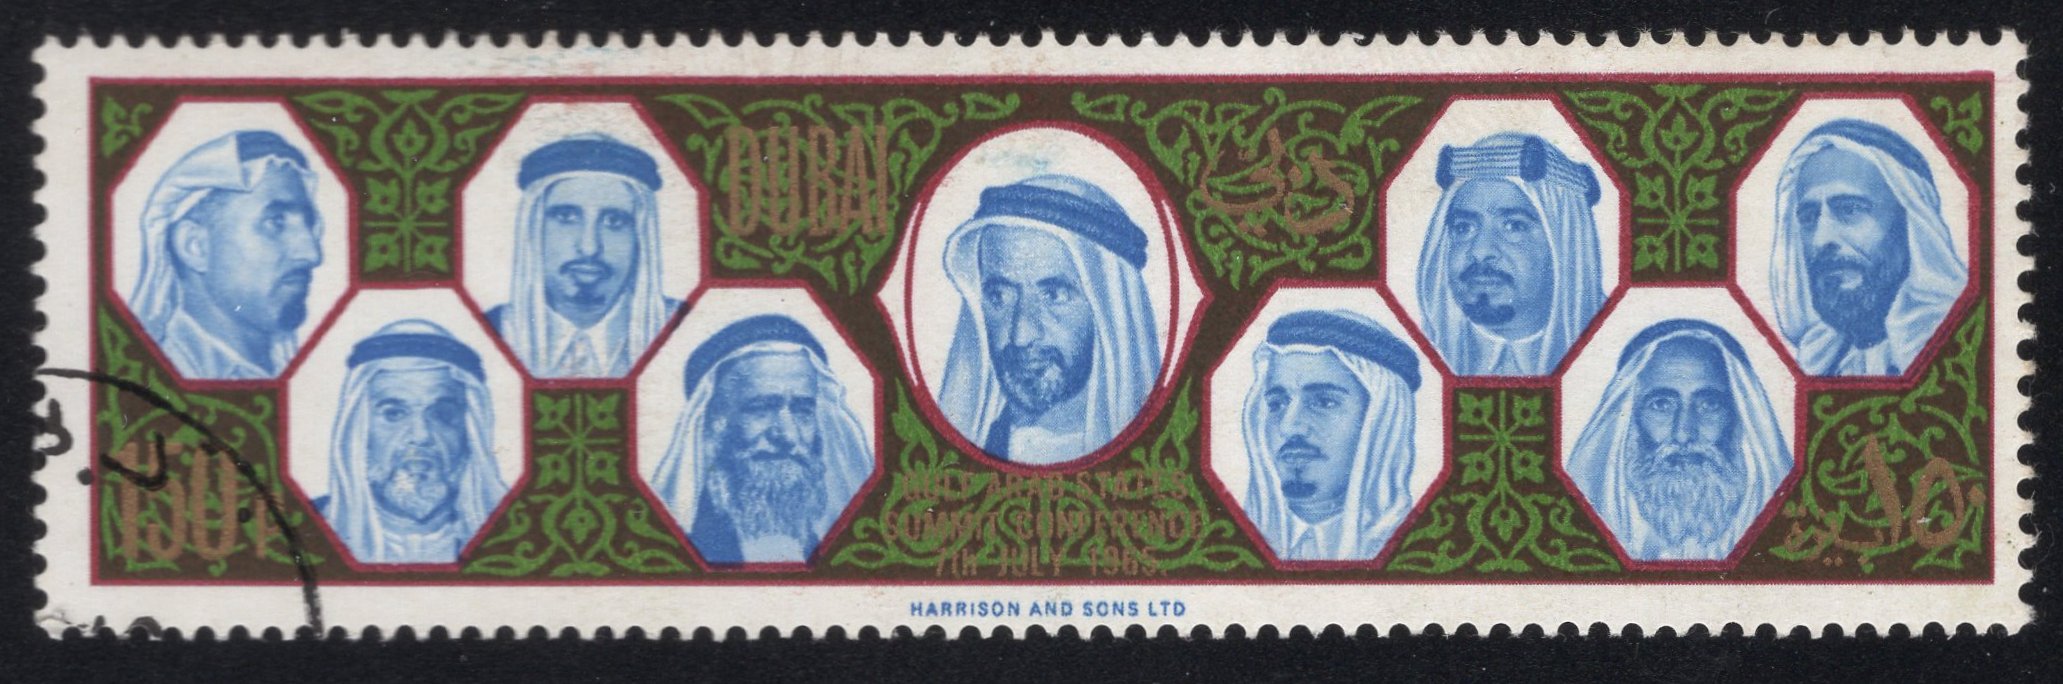 DUBAI. uvedena chybná měna 'paisa', ale mělo být 'naye paise' (3)